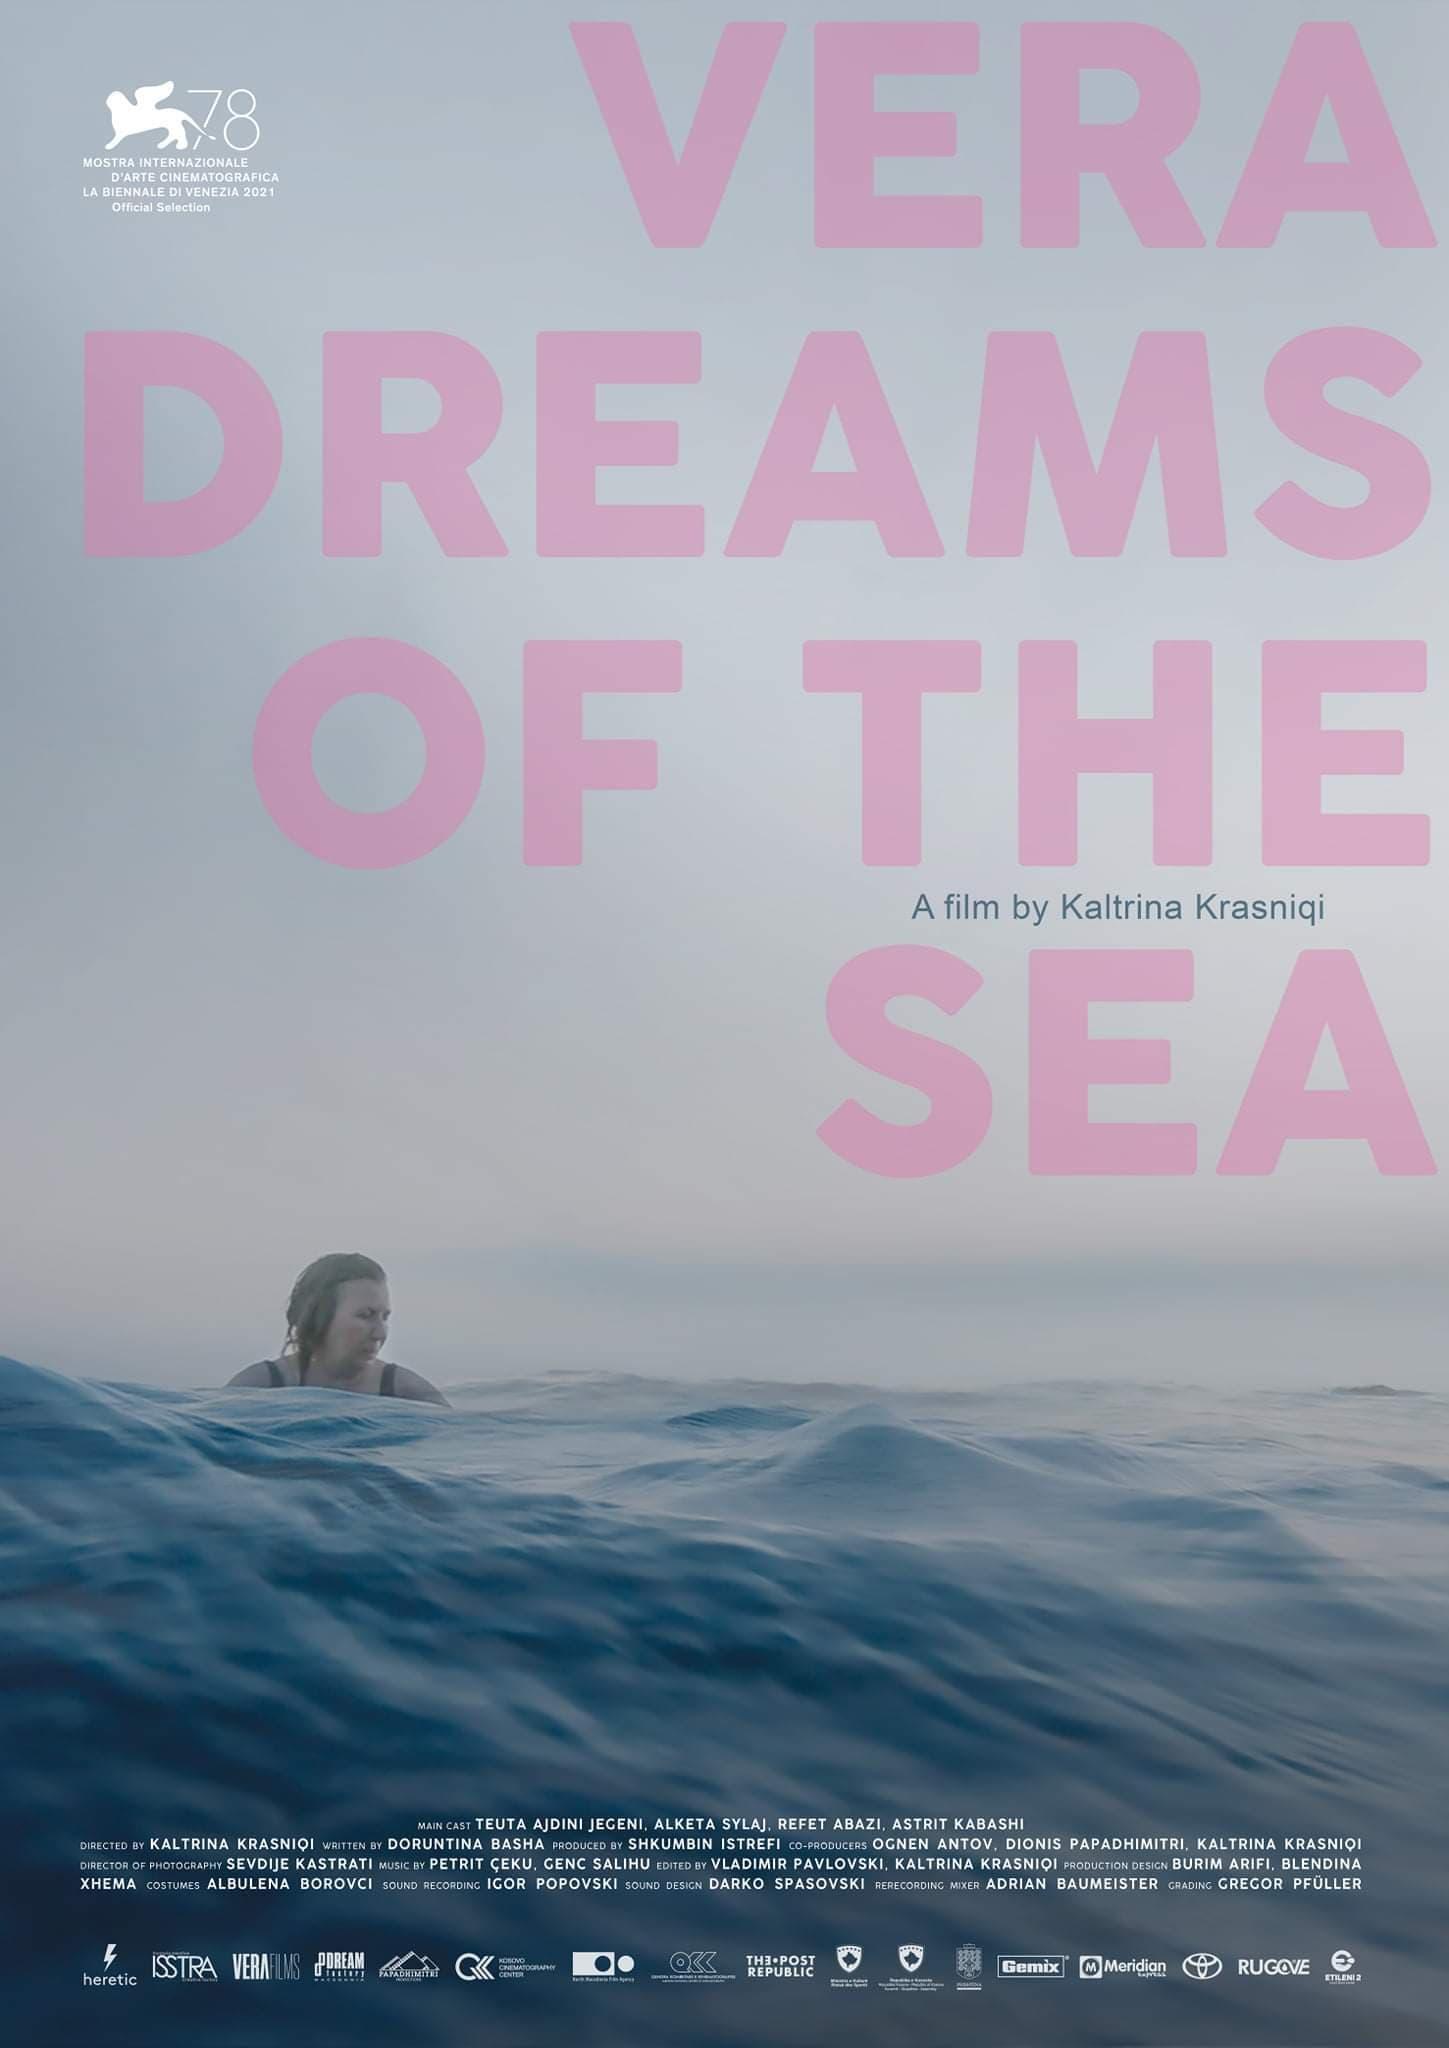 Vera Dreams of the Sea poster